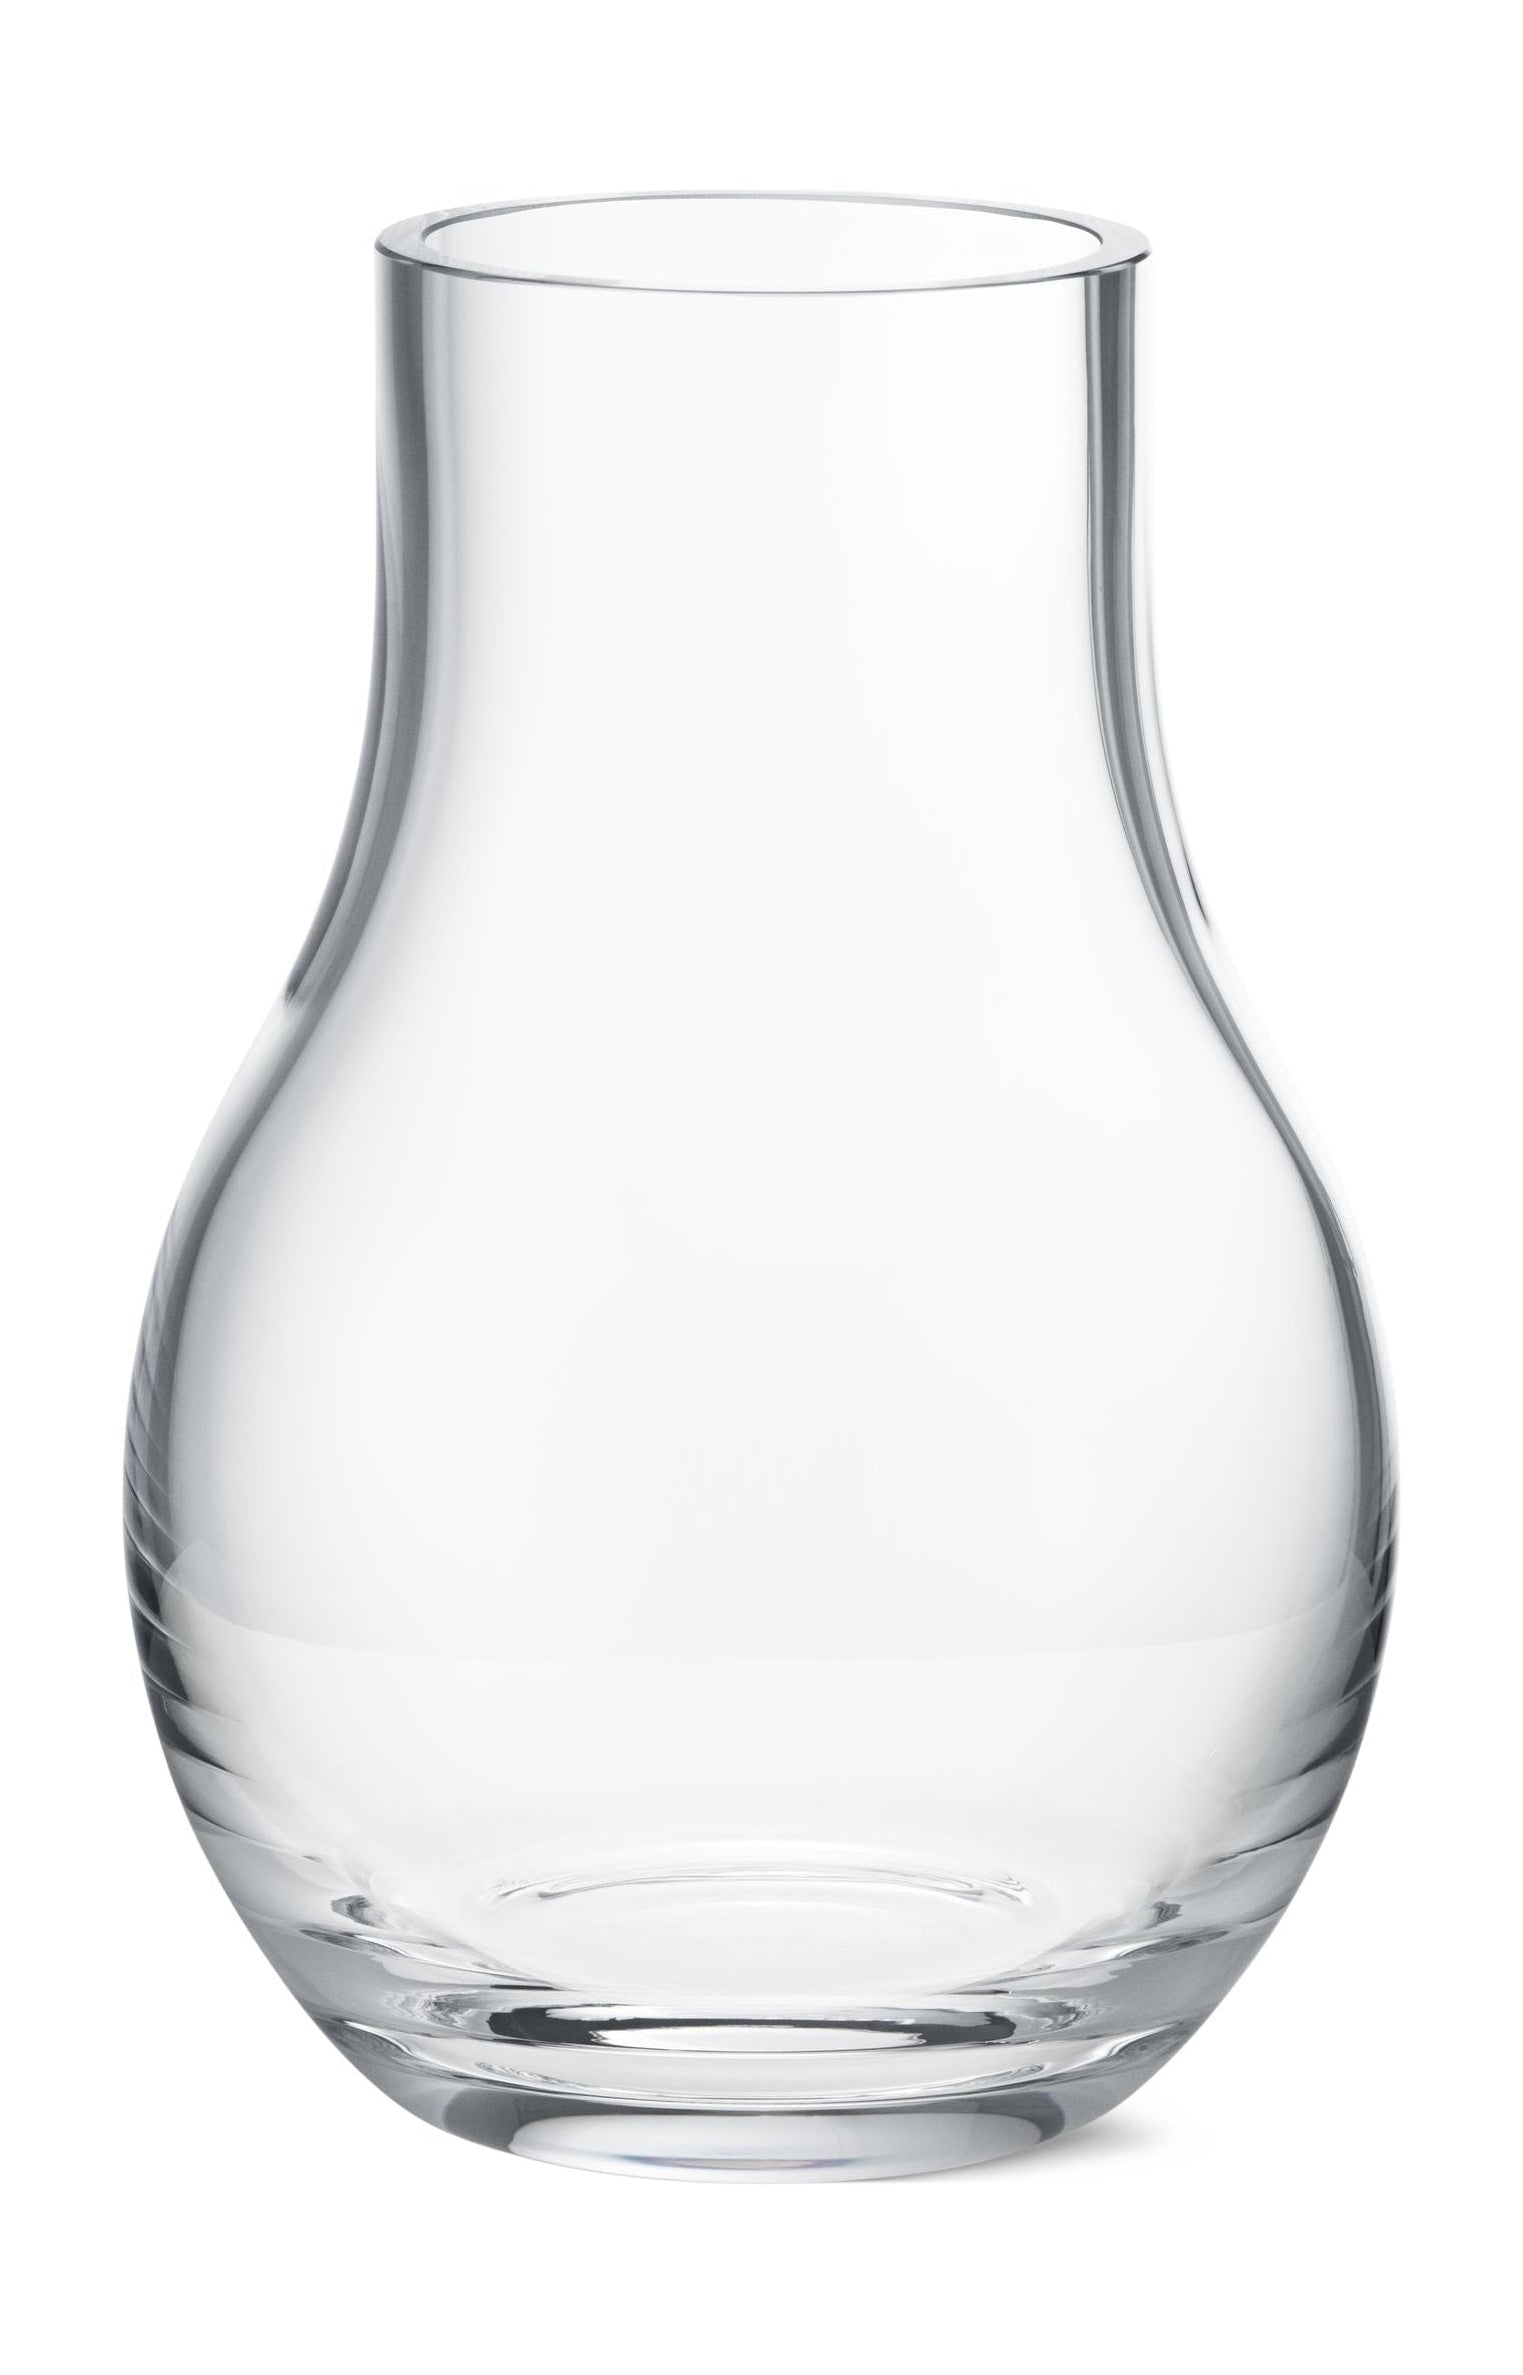 Georg Jensen CAFU vaasglas helder, 21,6 cm